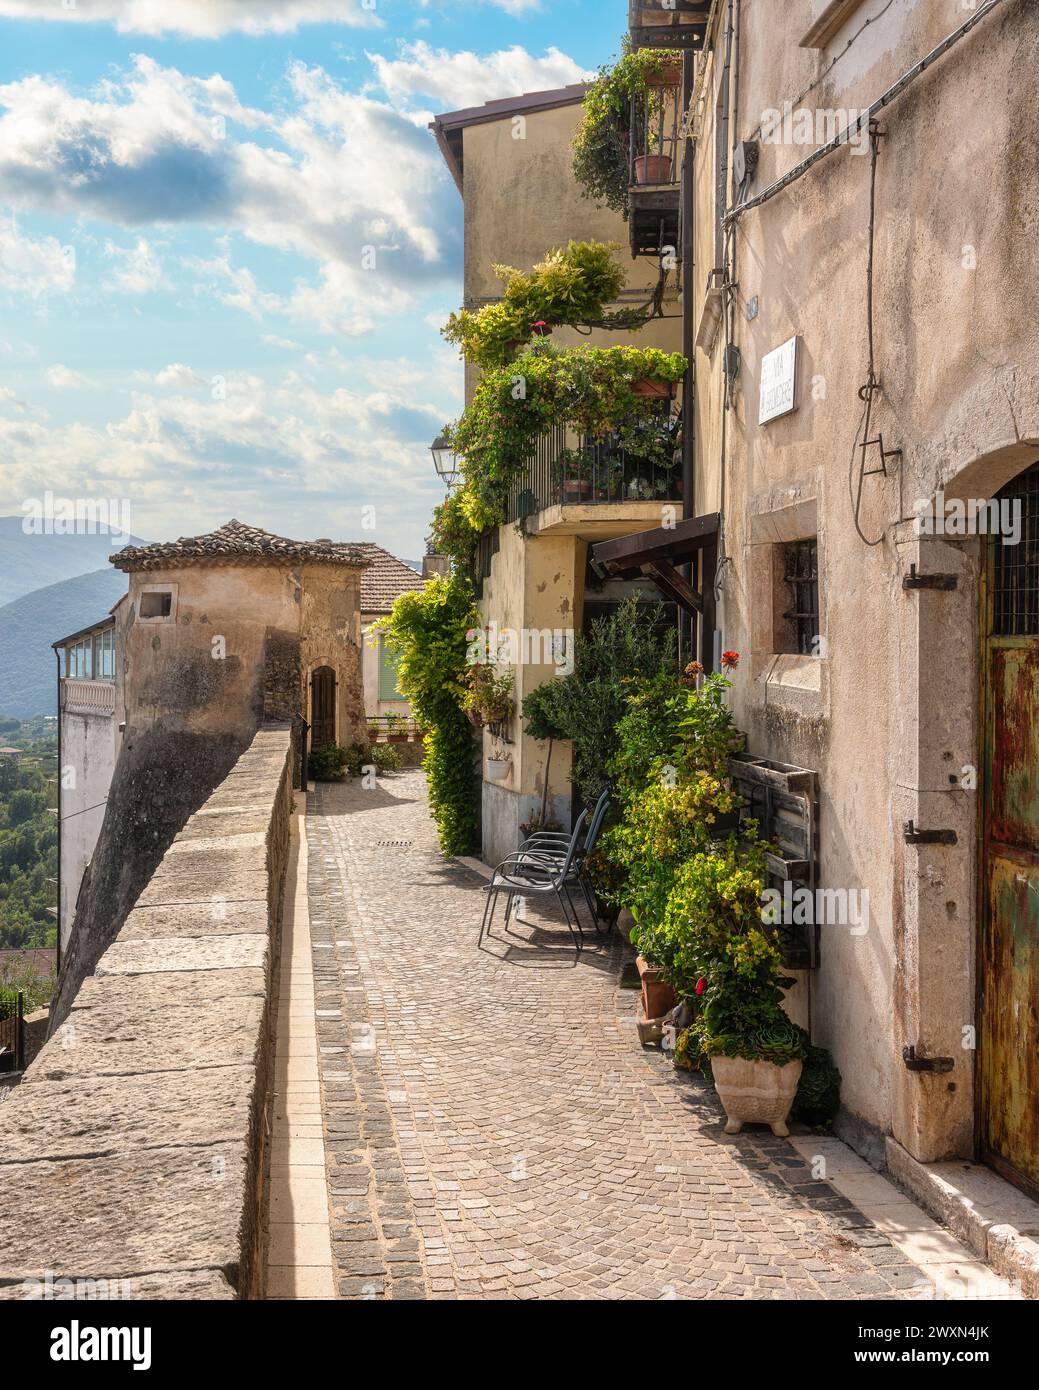 Il pittoresco borgo di fornelli, in un soleggiato pomeriggio d'estate, in provincia di Isernia, Molise, Italia. Foto Stock